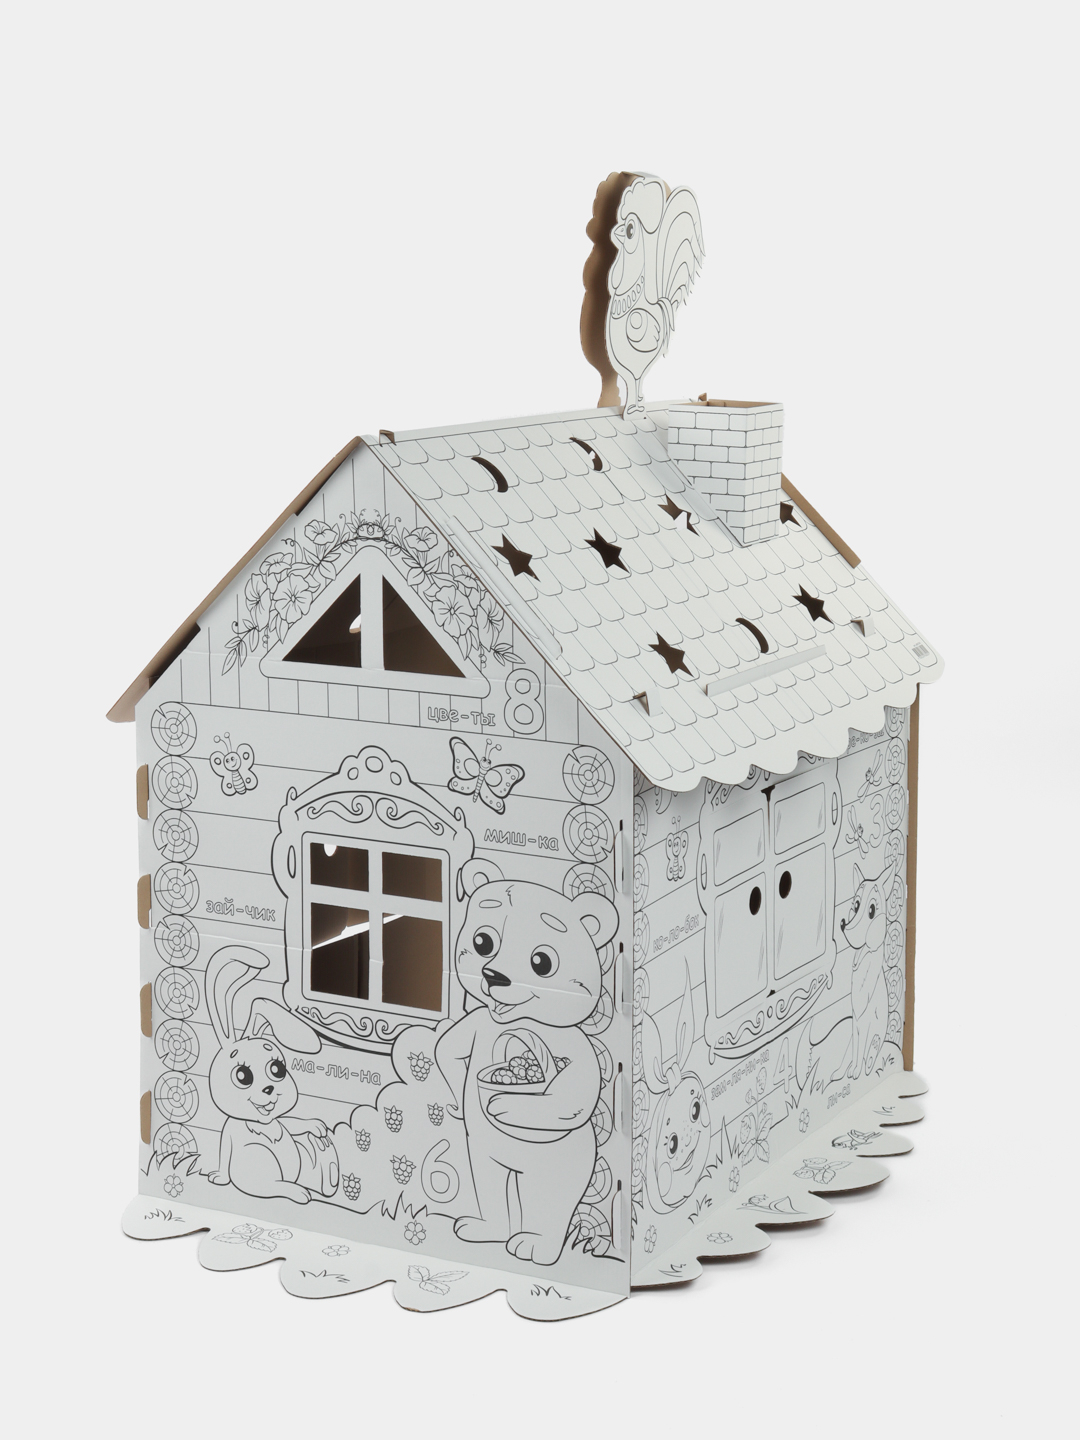 Картонный игровой развивающий домик-раскраска «Сказочный», высота 130 см | Код товара: 124907